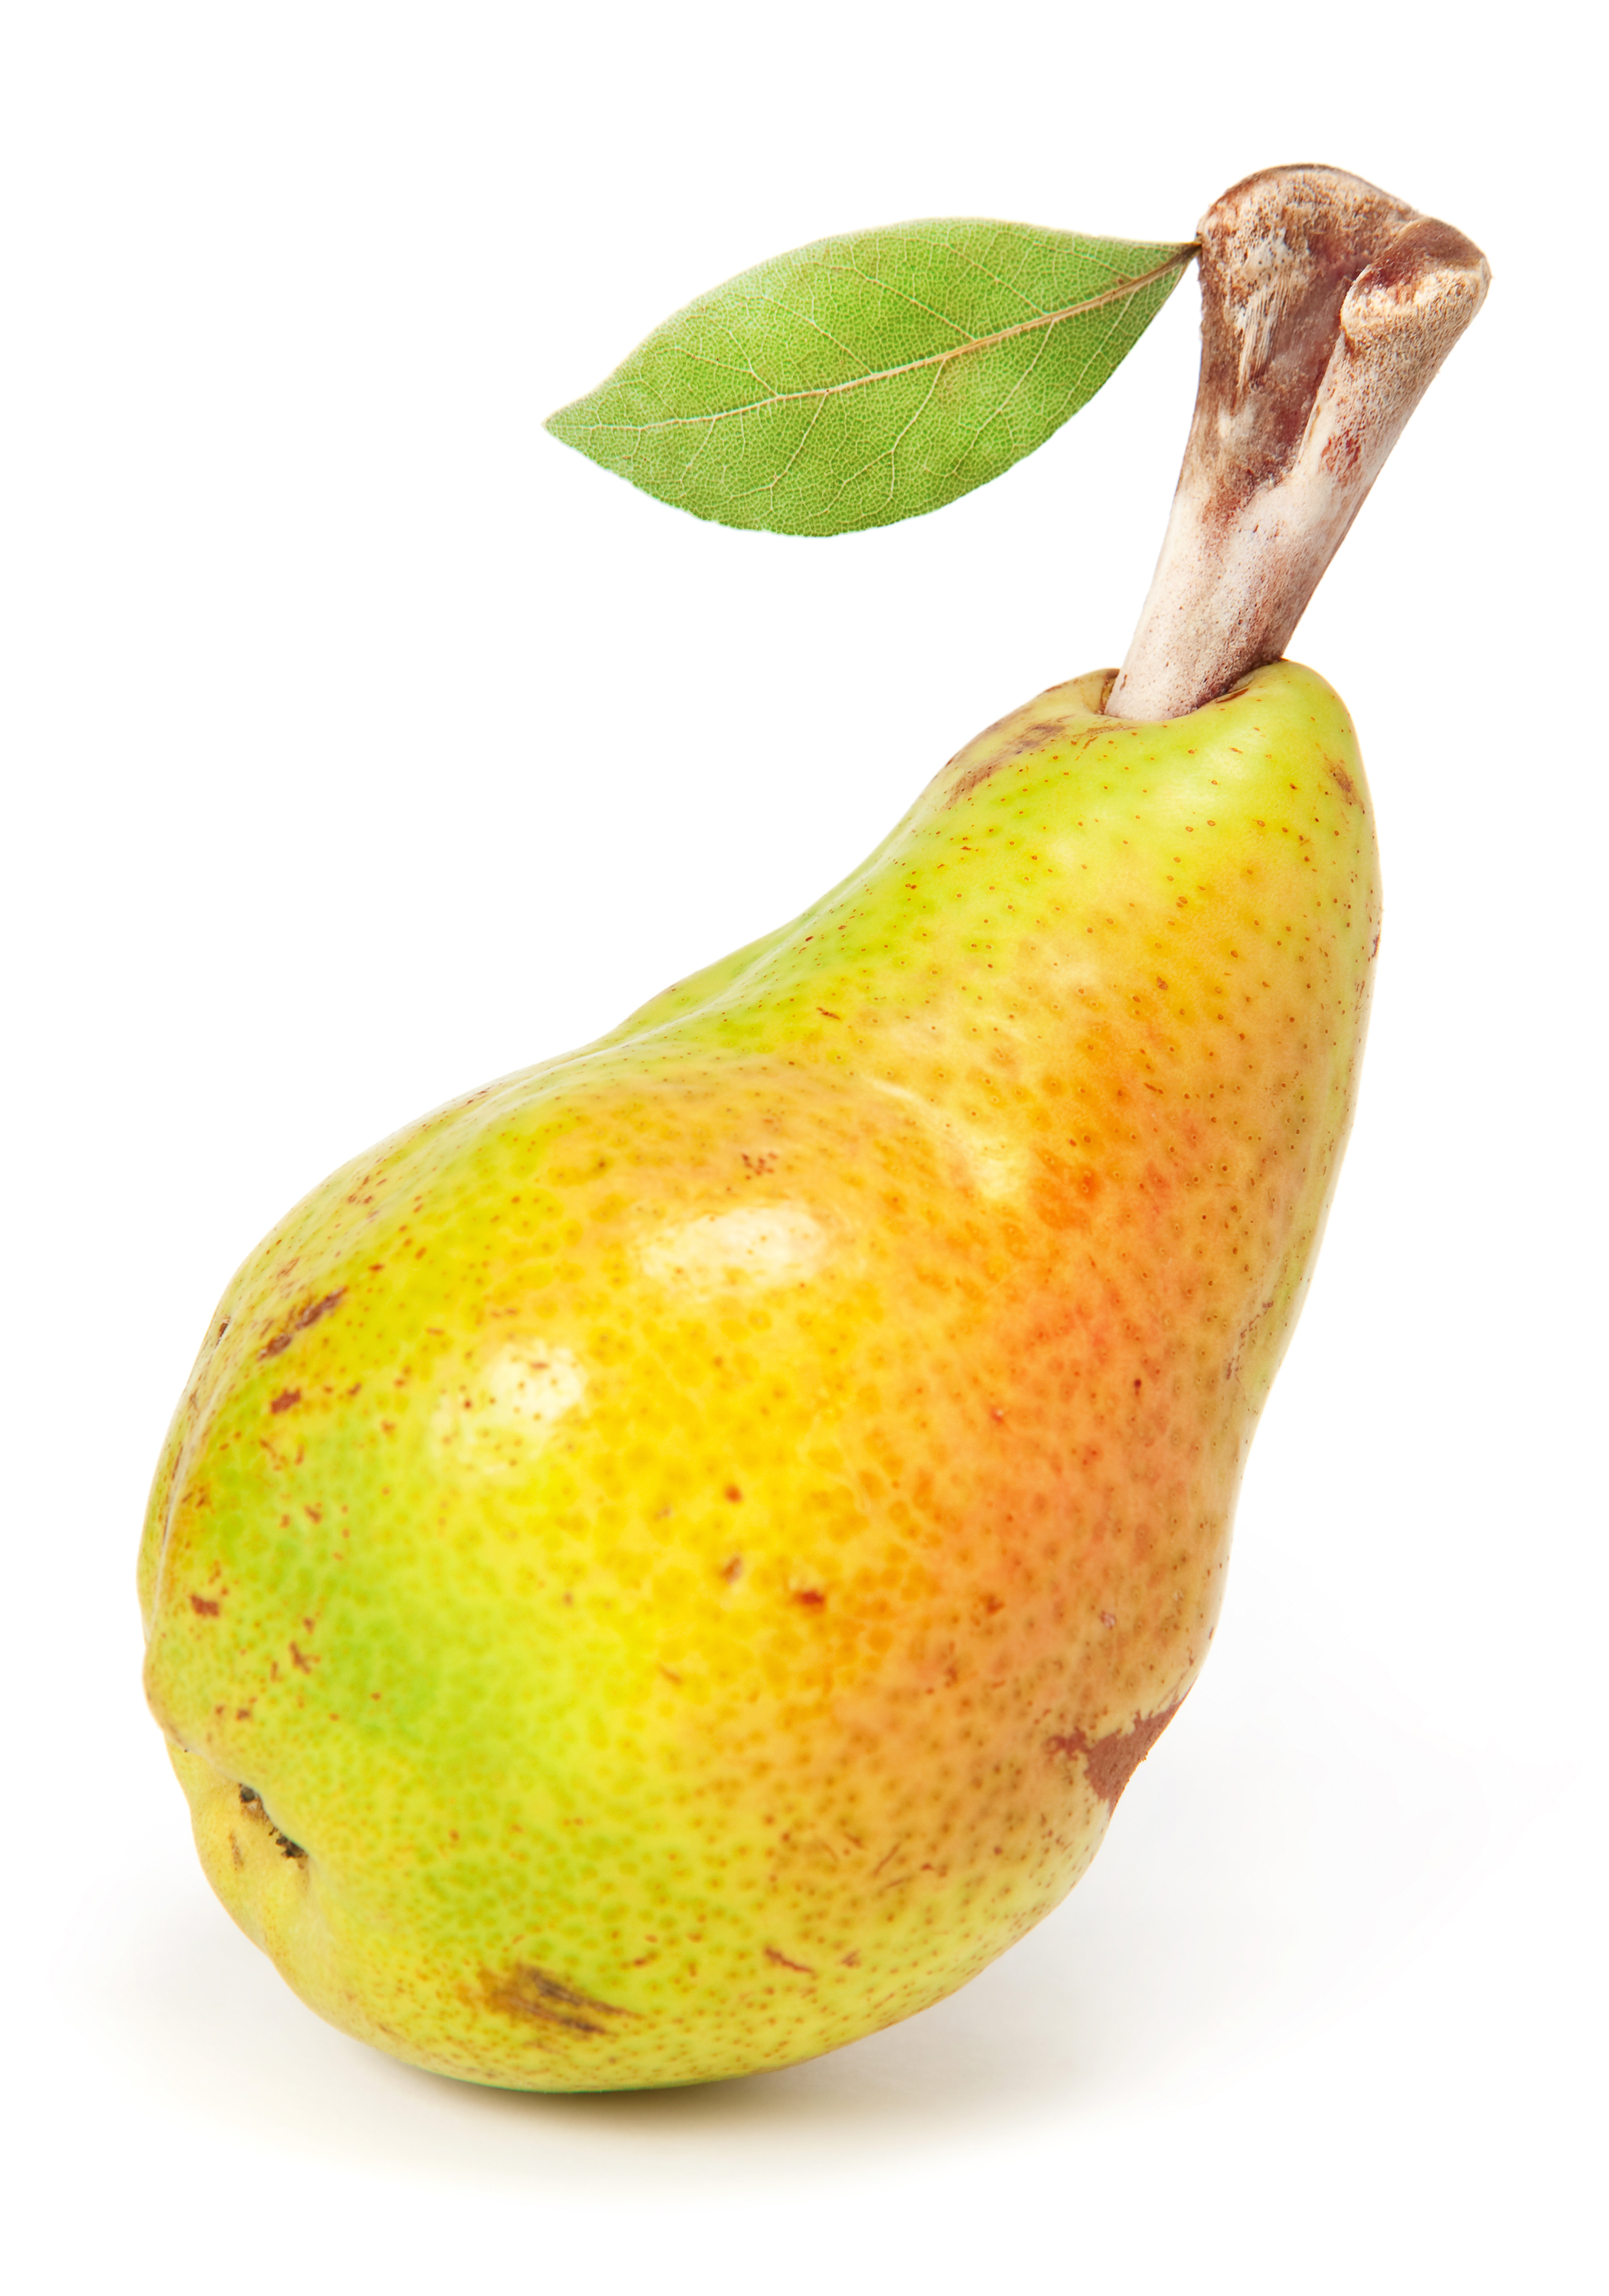 Pear photo